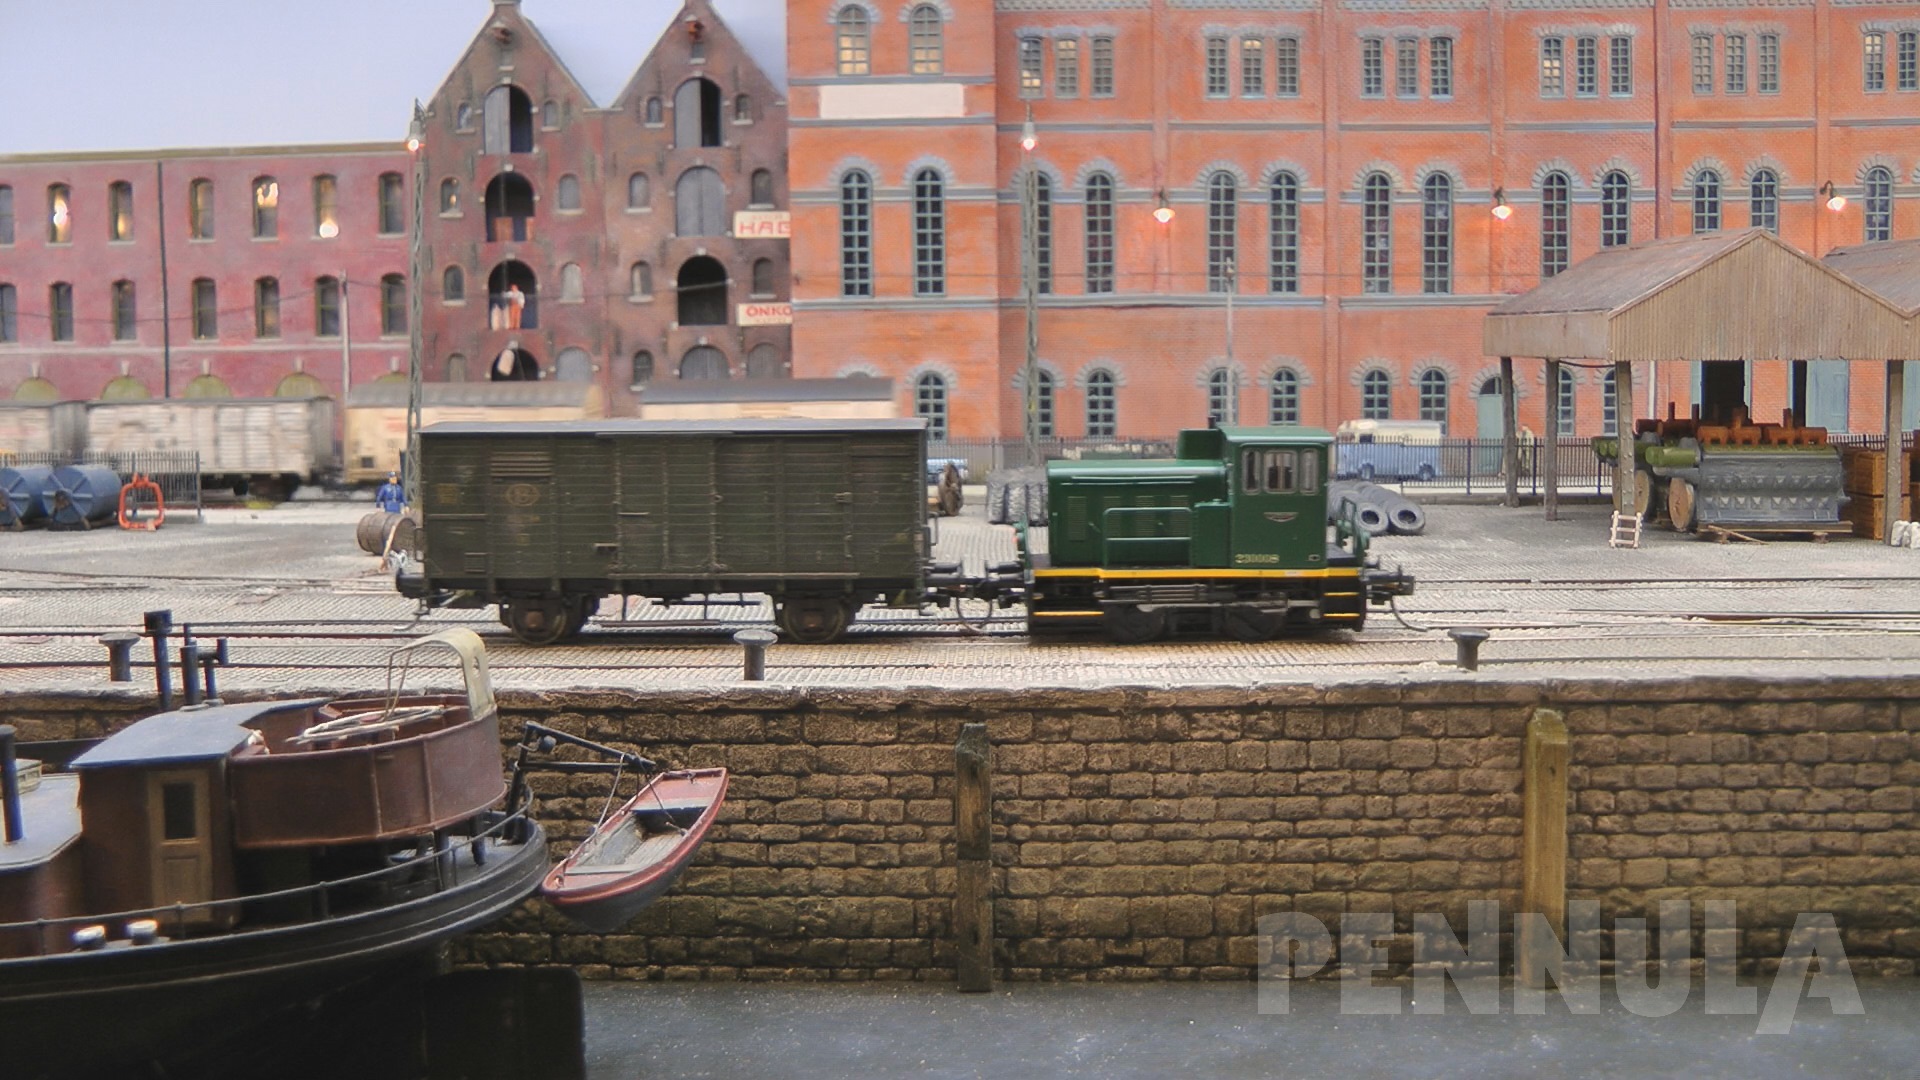 Ein Meisterwerk im Modellbau: Der alte Hafen von Antwerpen - Modellbahn Spur H0 Anlage